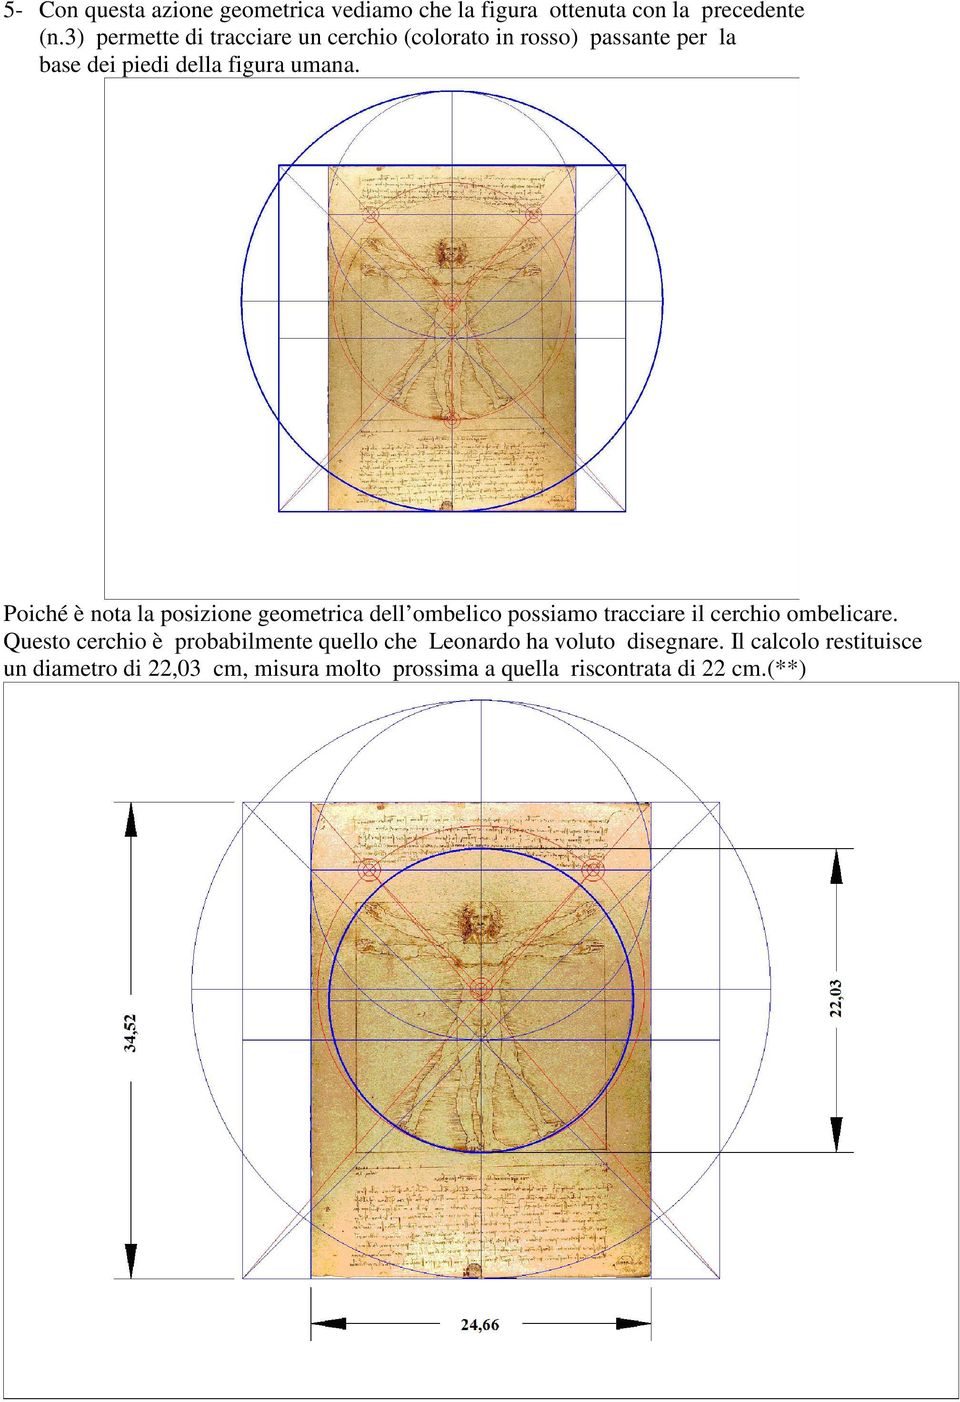 Poiché è nota la posizione geometrica dell ombelico possiamo tracciare il cerchio ombelicare.